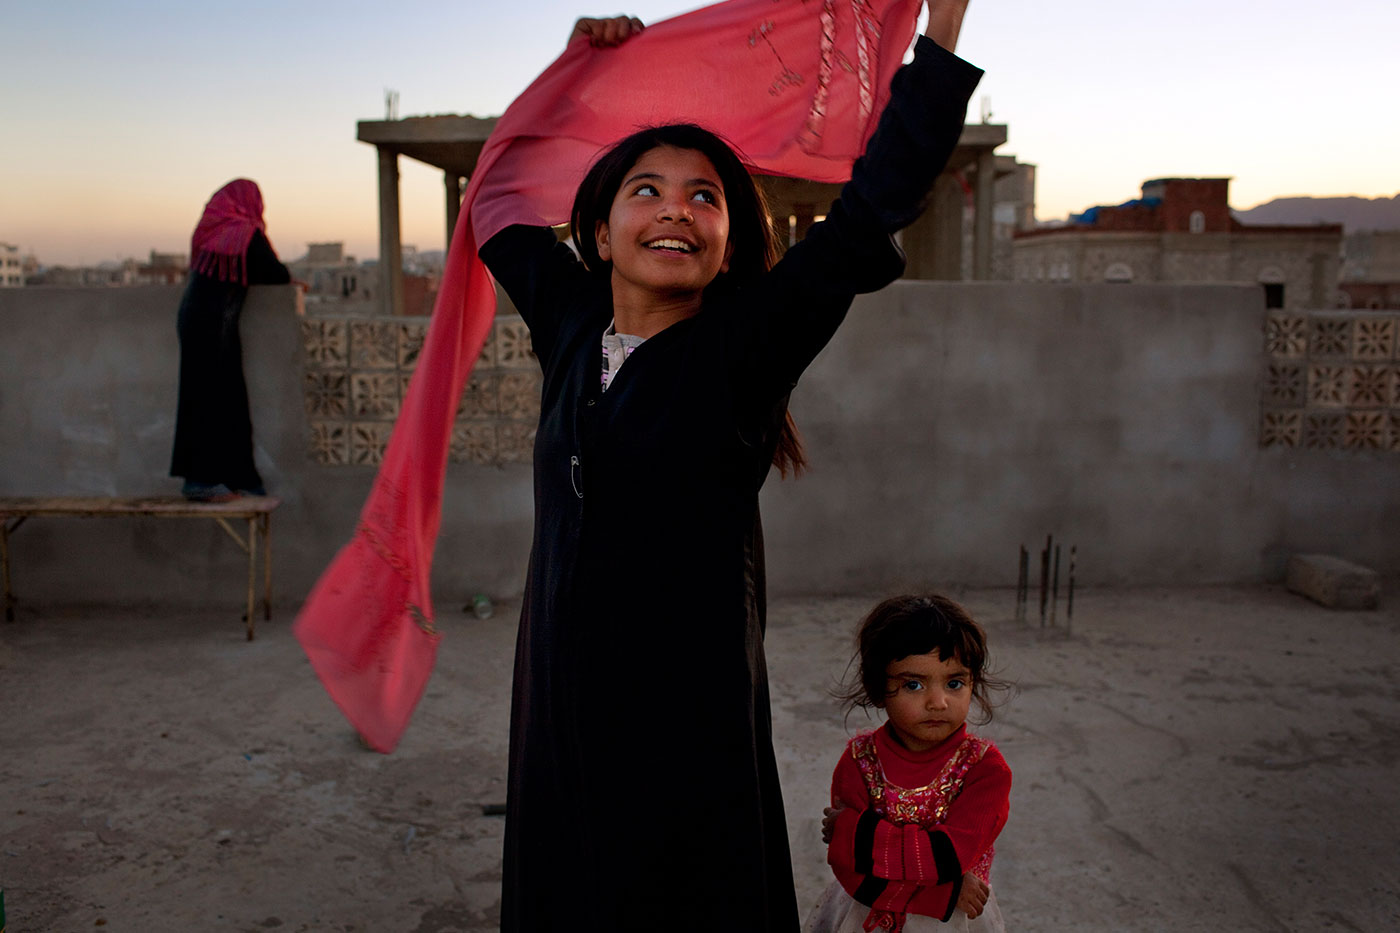 #2 10-aastane Jeemenist pärit tüdruk, kellele anti abielulahutus vägivaldsest abikaasast pääsemiseks.